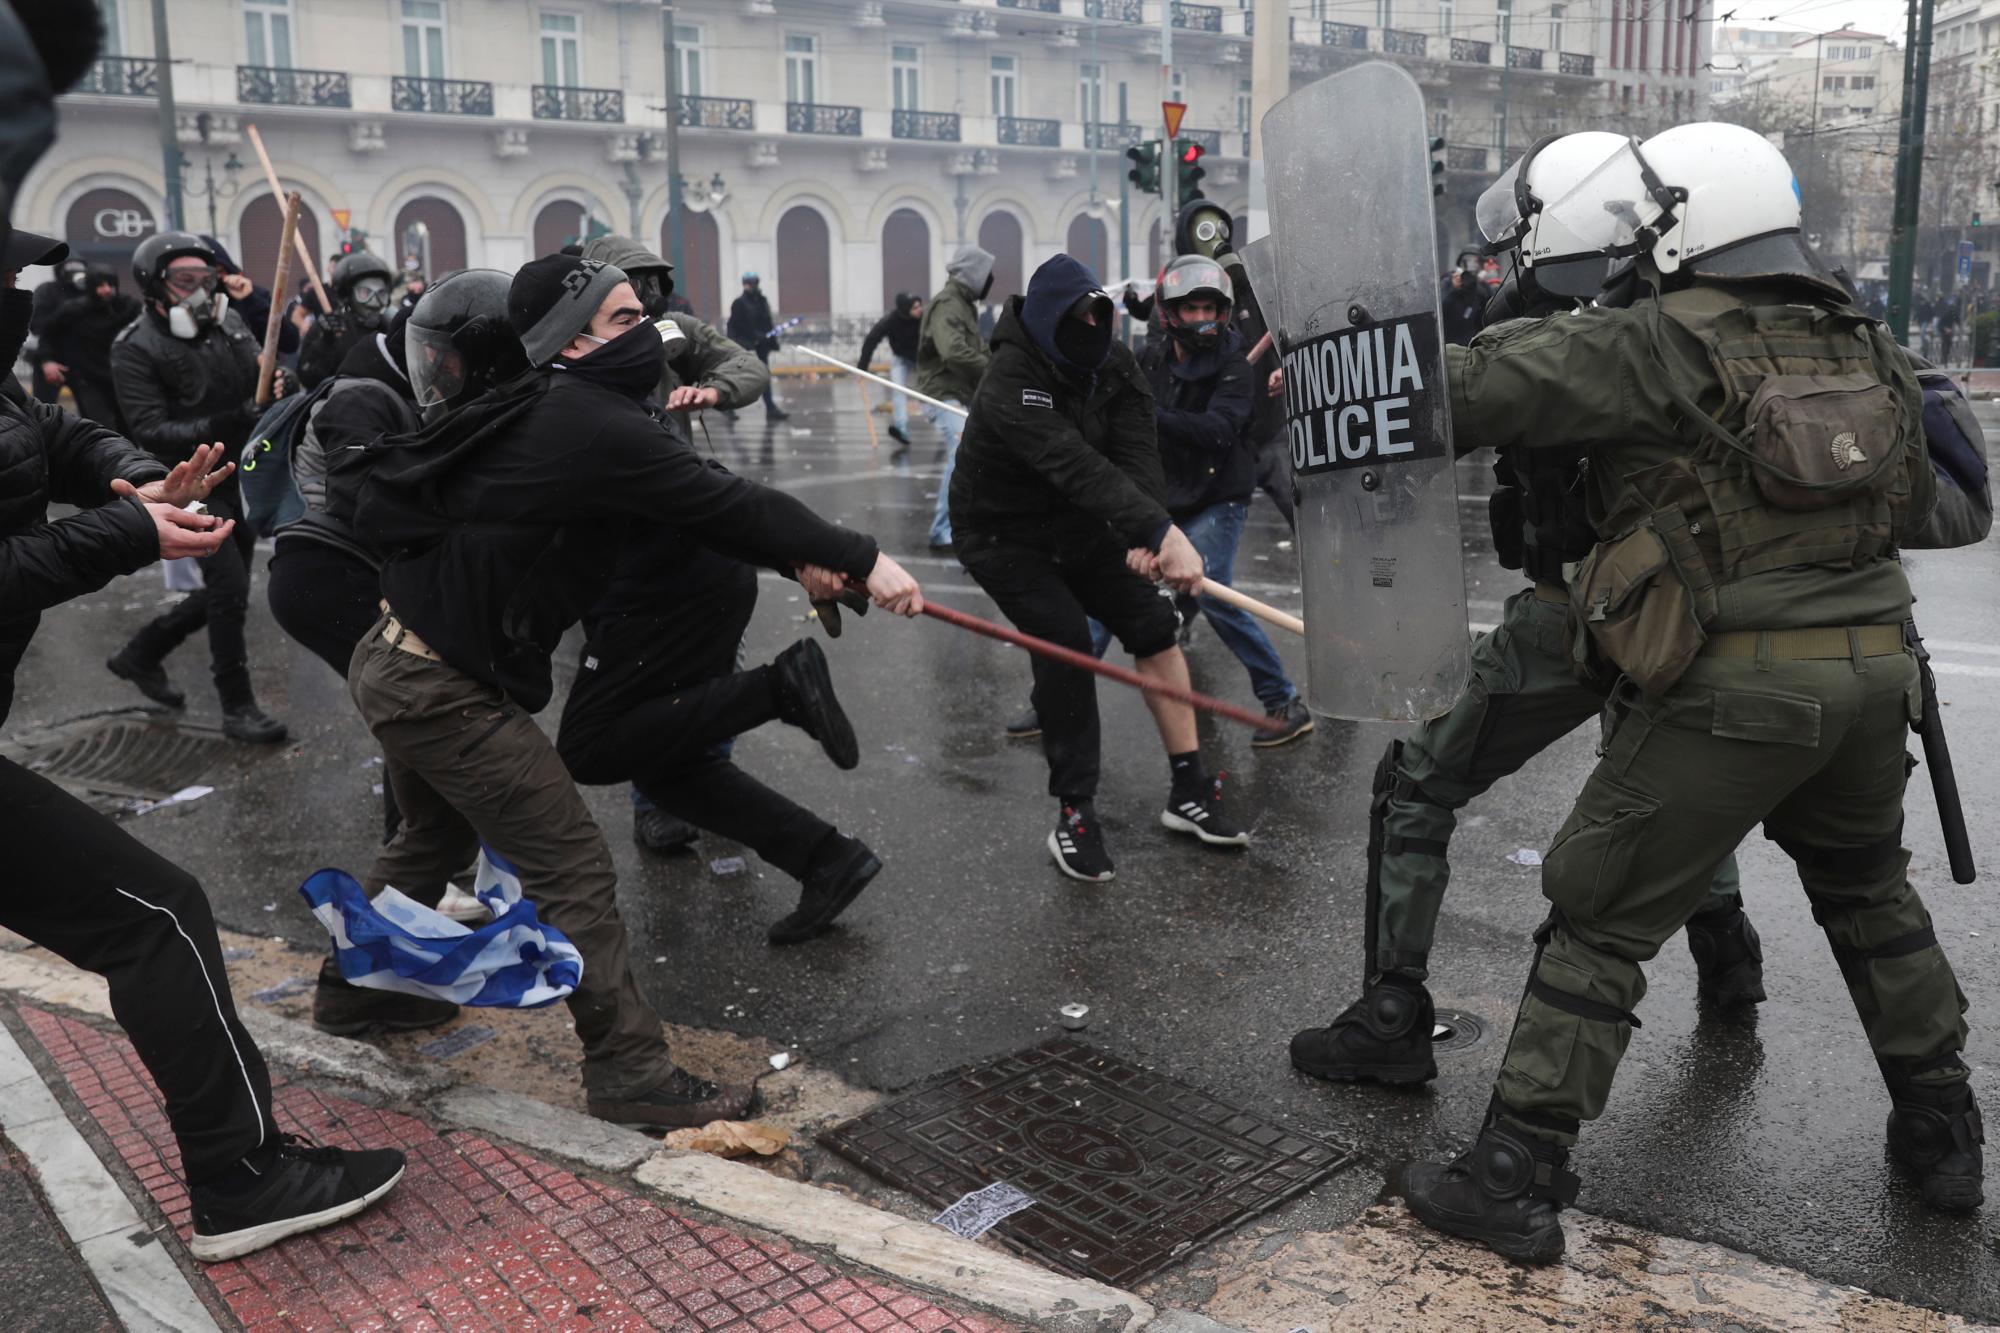 Los manifestantes se enfrentarán con la policía antidisturbios durante un mitin en Atenas, el domingo 20 de enero de 2019. El Parlamento de Grecia votará la semana que viene sobre si ratificará el acuerdo que cambiará el nombre de su vecino del norte, el norte de Macedonia.